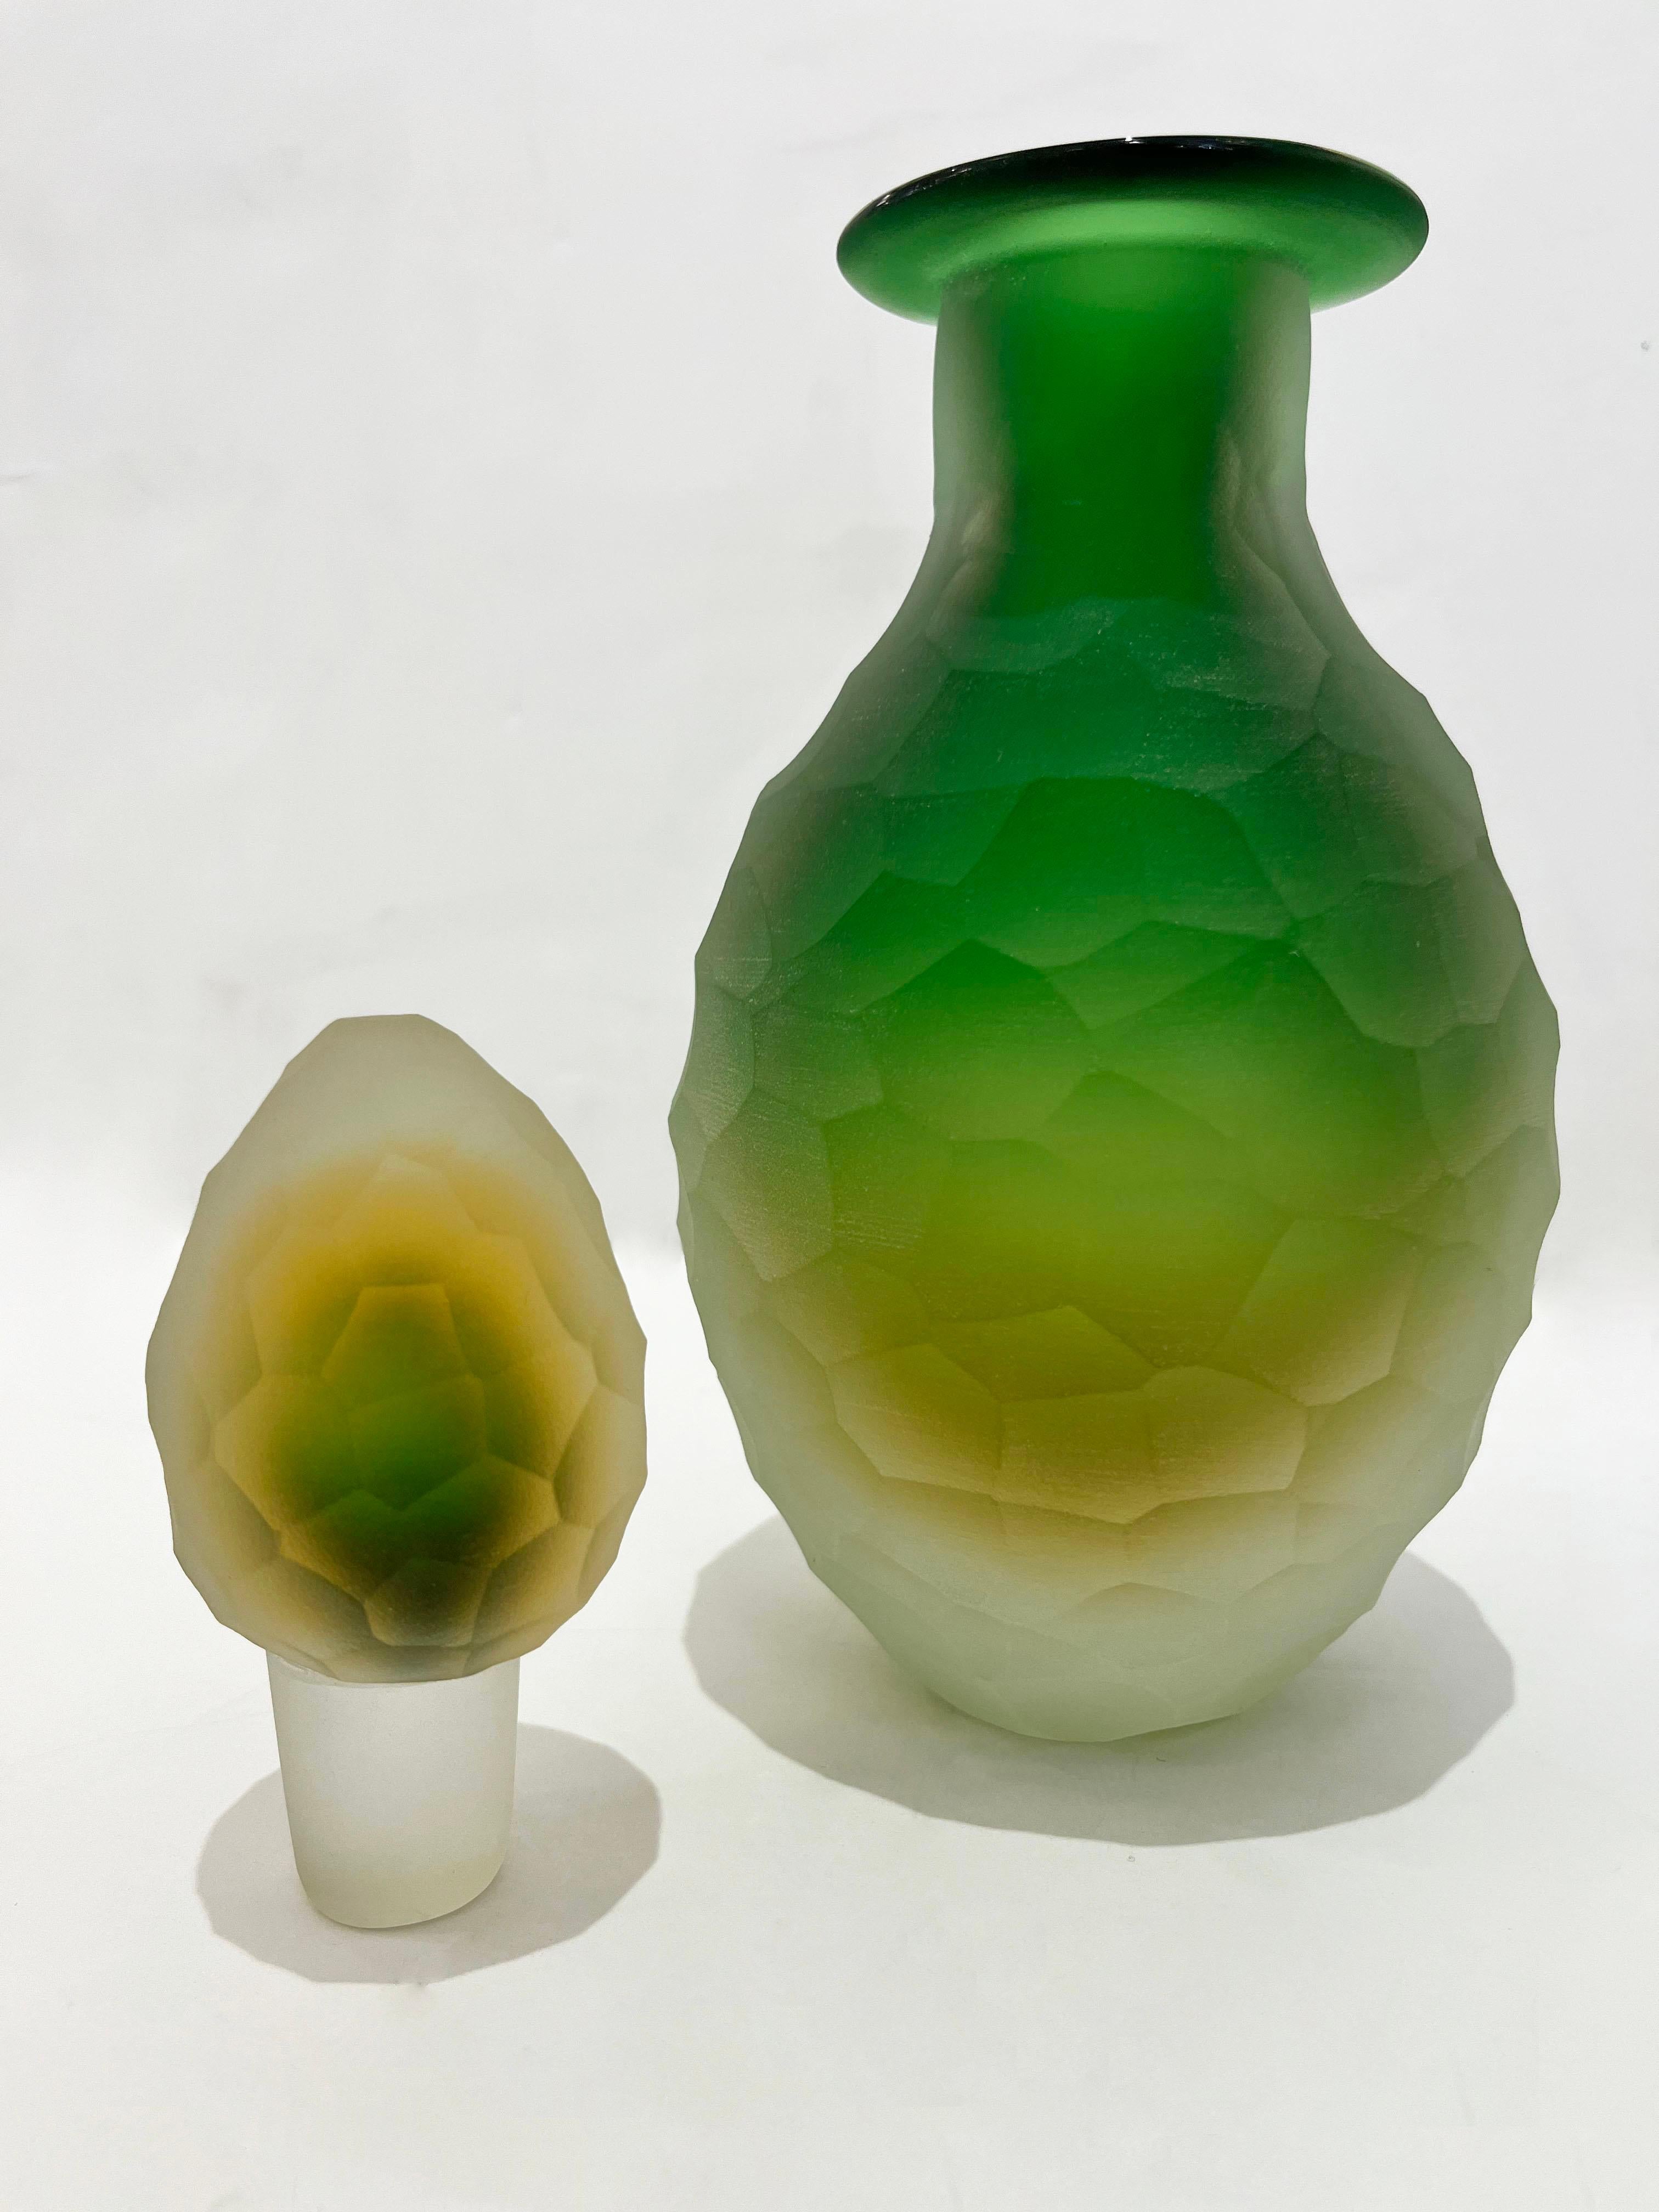 Bouteille vénitienne Art Déco du début des années 1900 en verre de Murano par la Cristallerie Franchetti, un objet rare pour sa taille et son élégant travail sophistiqué avec la technique Sommerso : le corps central vert est enveloppé dans une